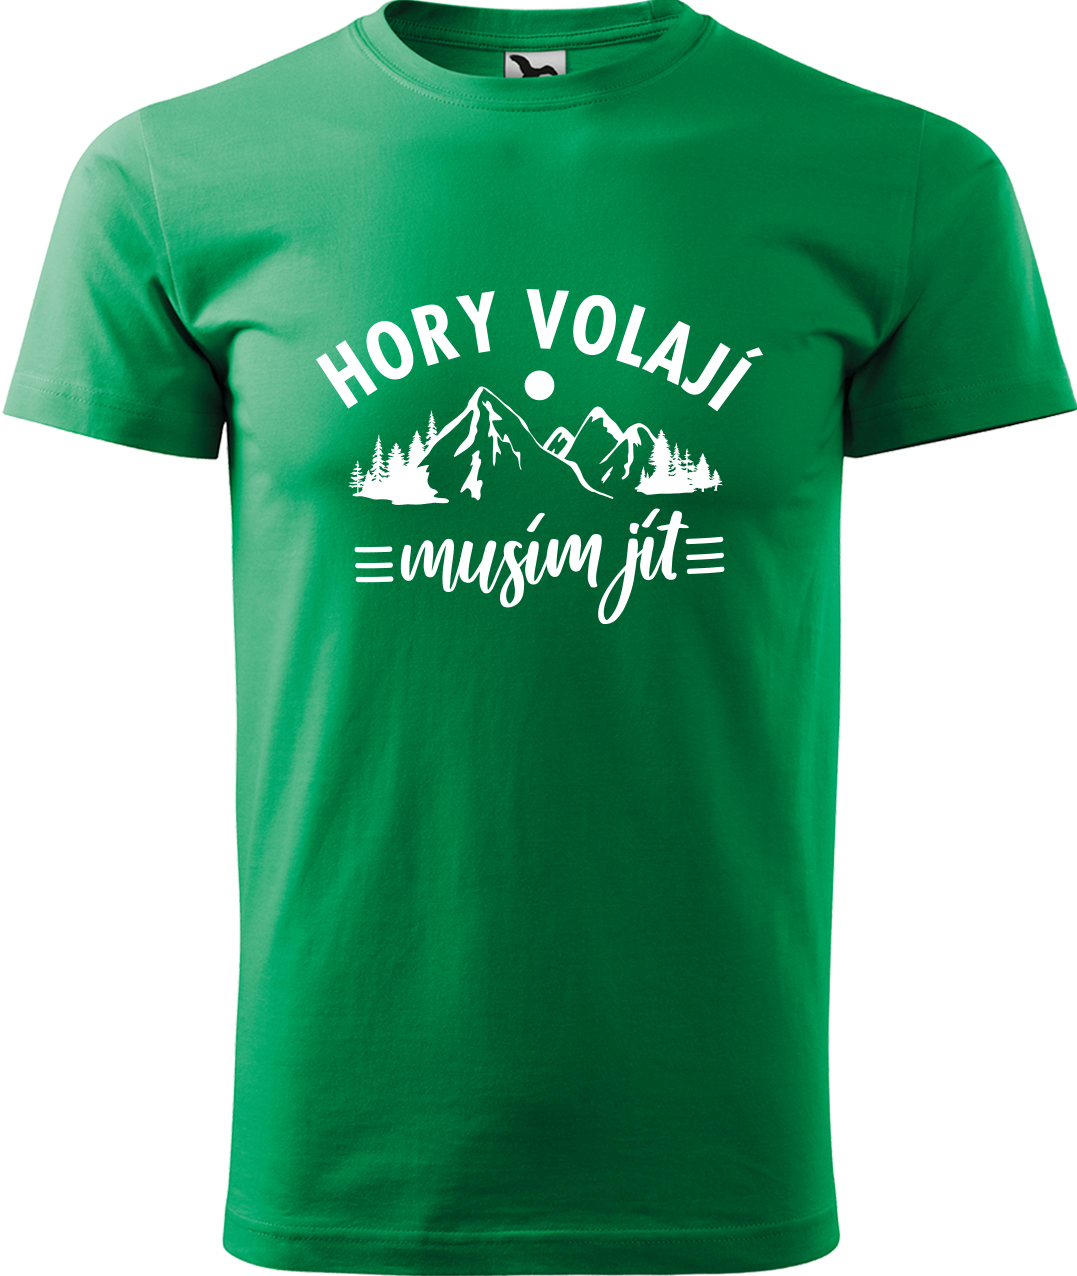 Pánské tričko na hory - Hory volají, musím jít Velikost: M, Barva: Středně zelená (16), Střih: pánský